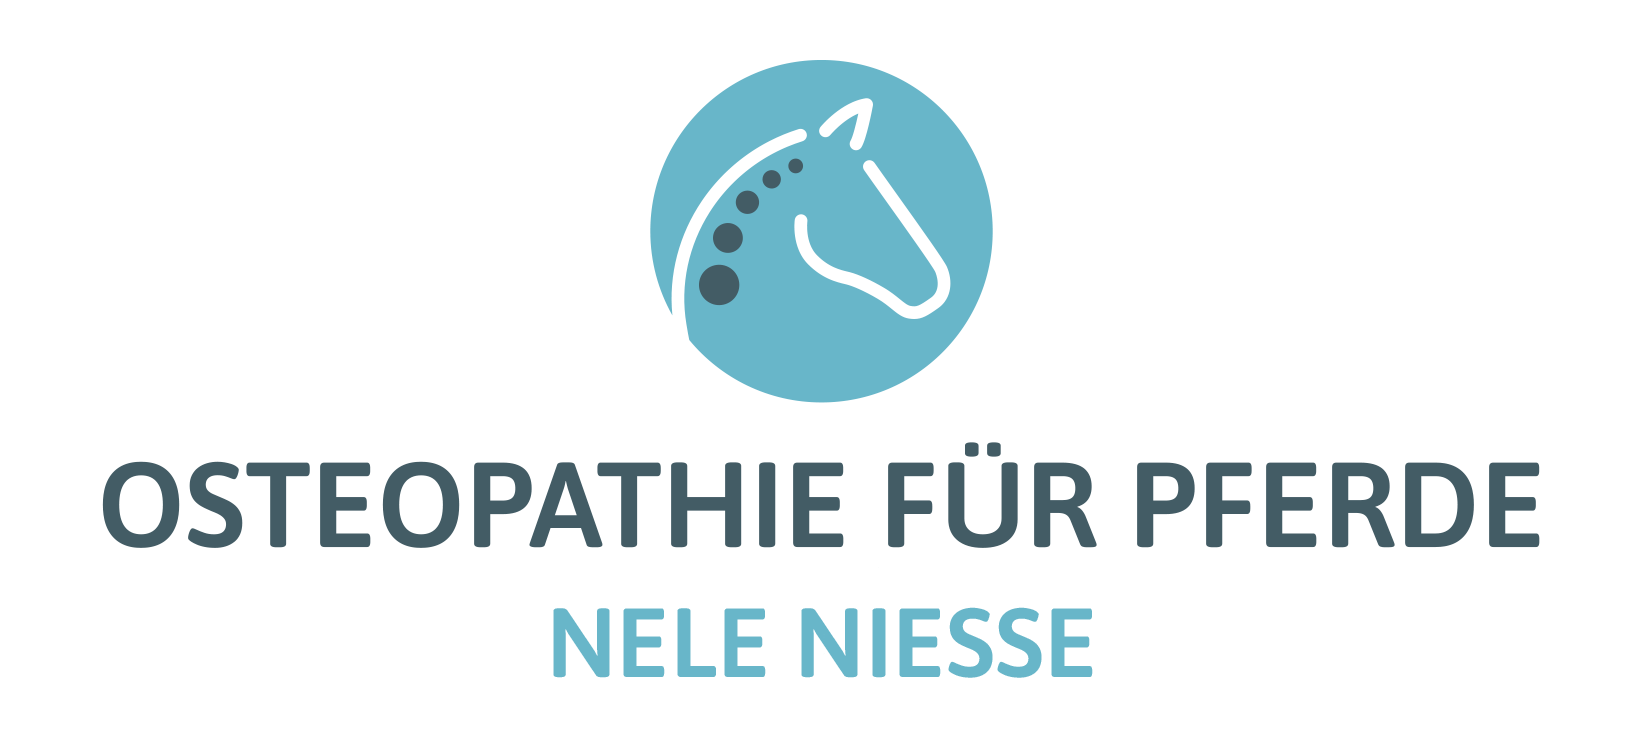 Nele Niesse I Osteopathie für Pferde in Göttingen